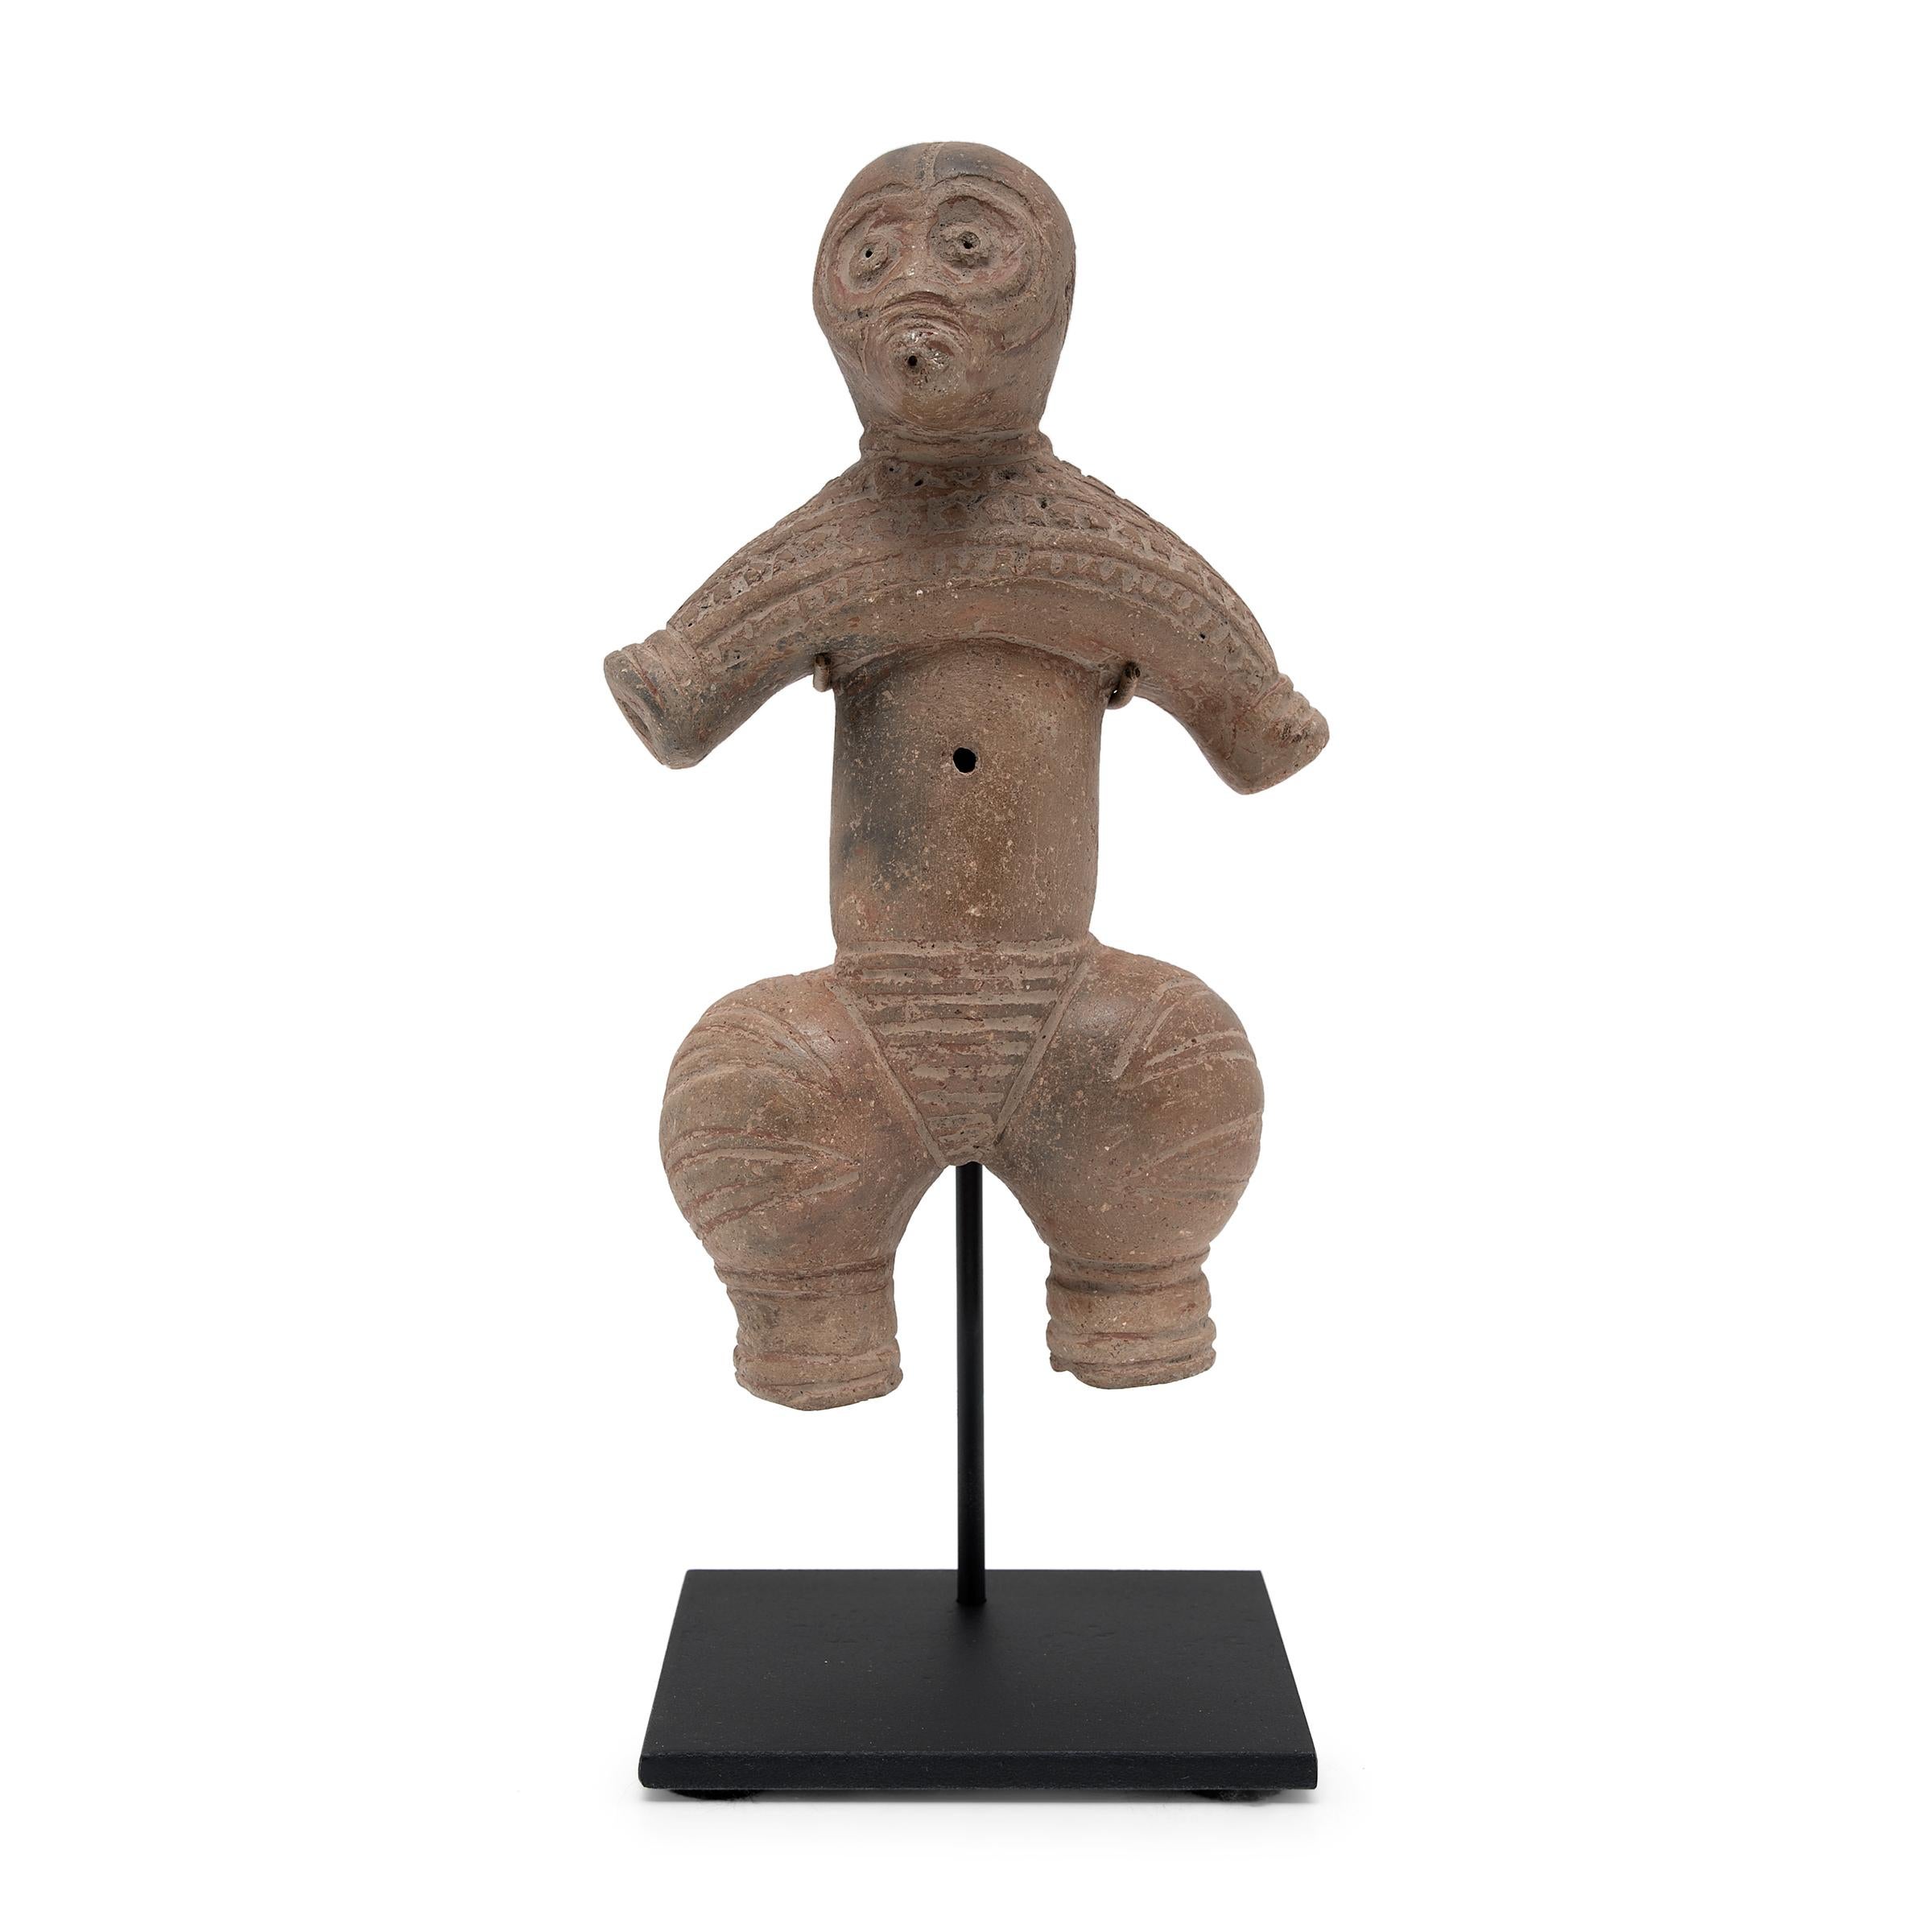 Cette paire de figurines en terre cuite au style complexe est sculptée dans le style des sculptures japonaises Dogū de la période Jōmon (10e-4e siècle C.I.C.). Rappelant les figurines Pre-Columbian redware, les céramiques Dogū sont connues pour leur